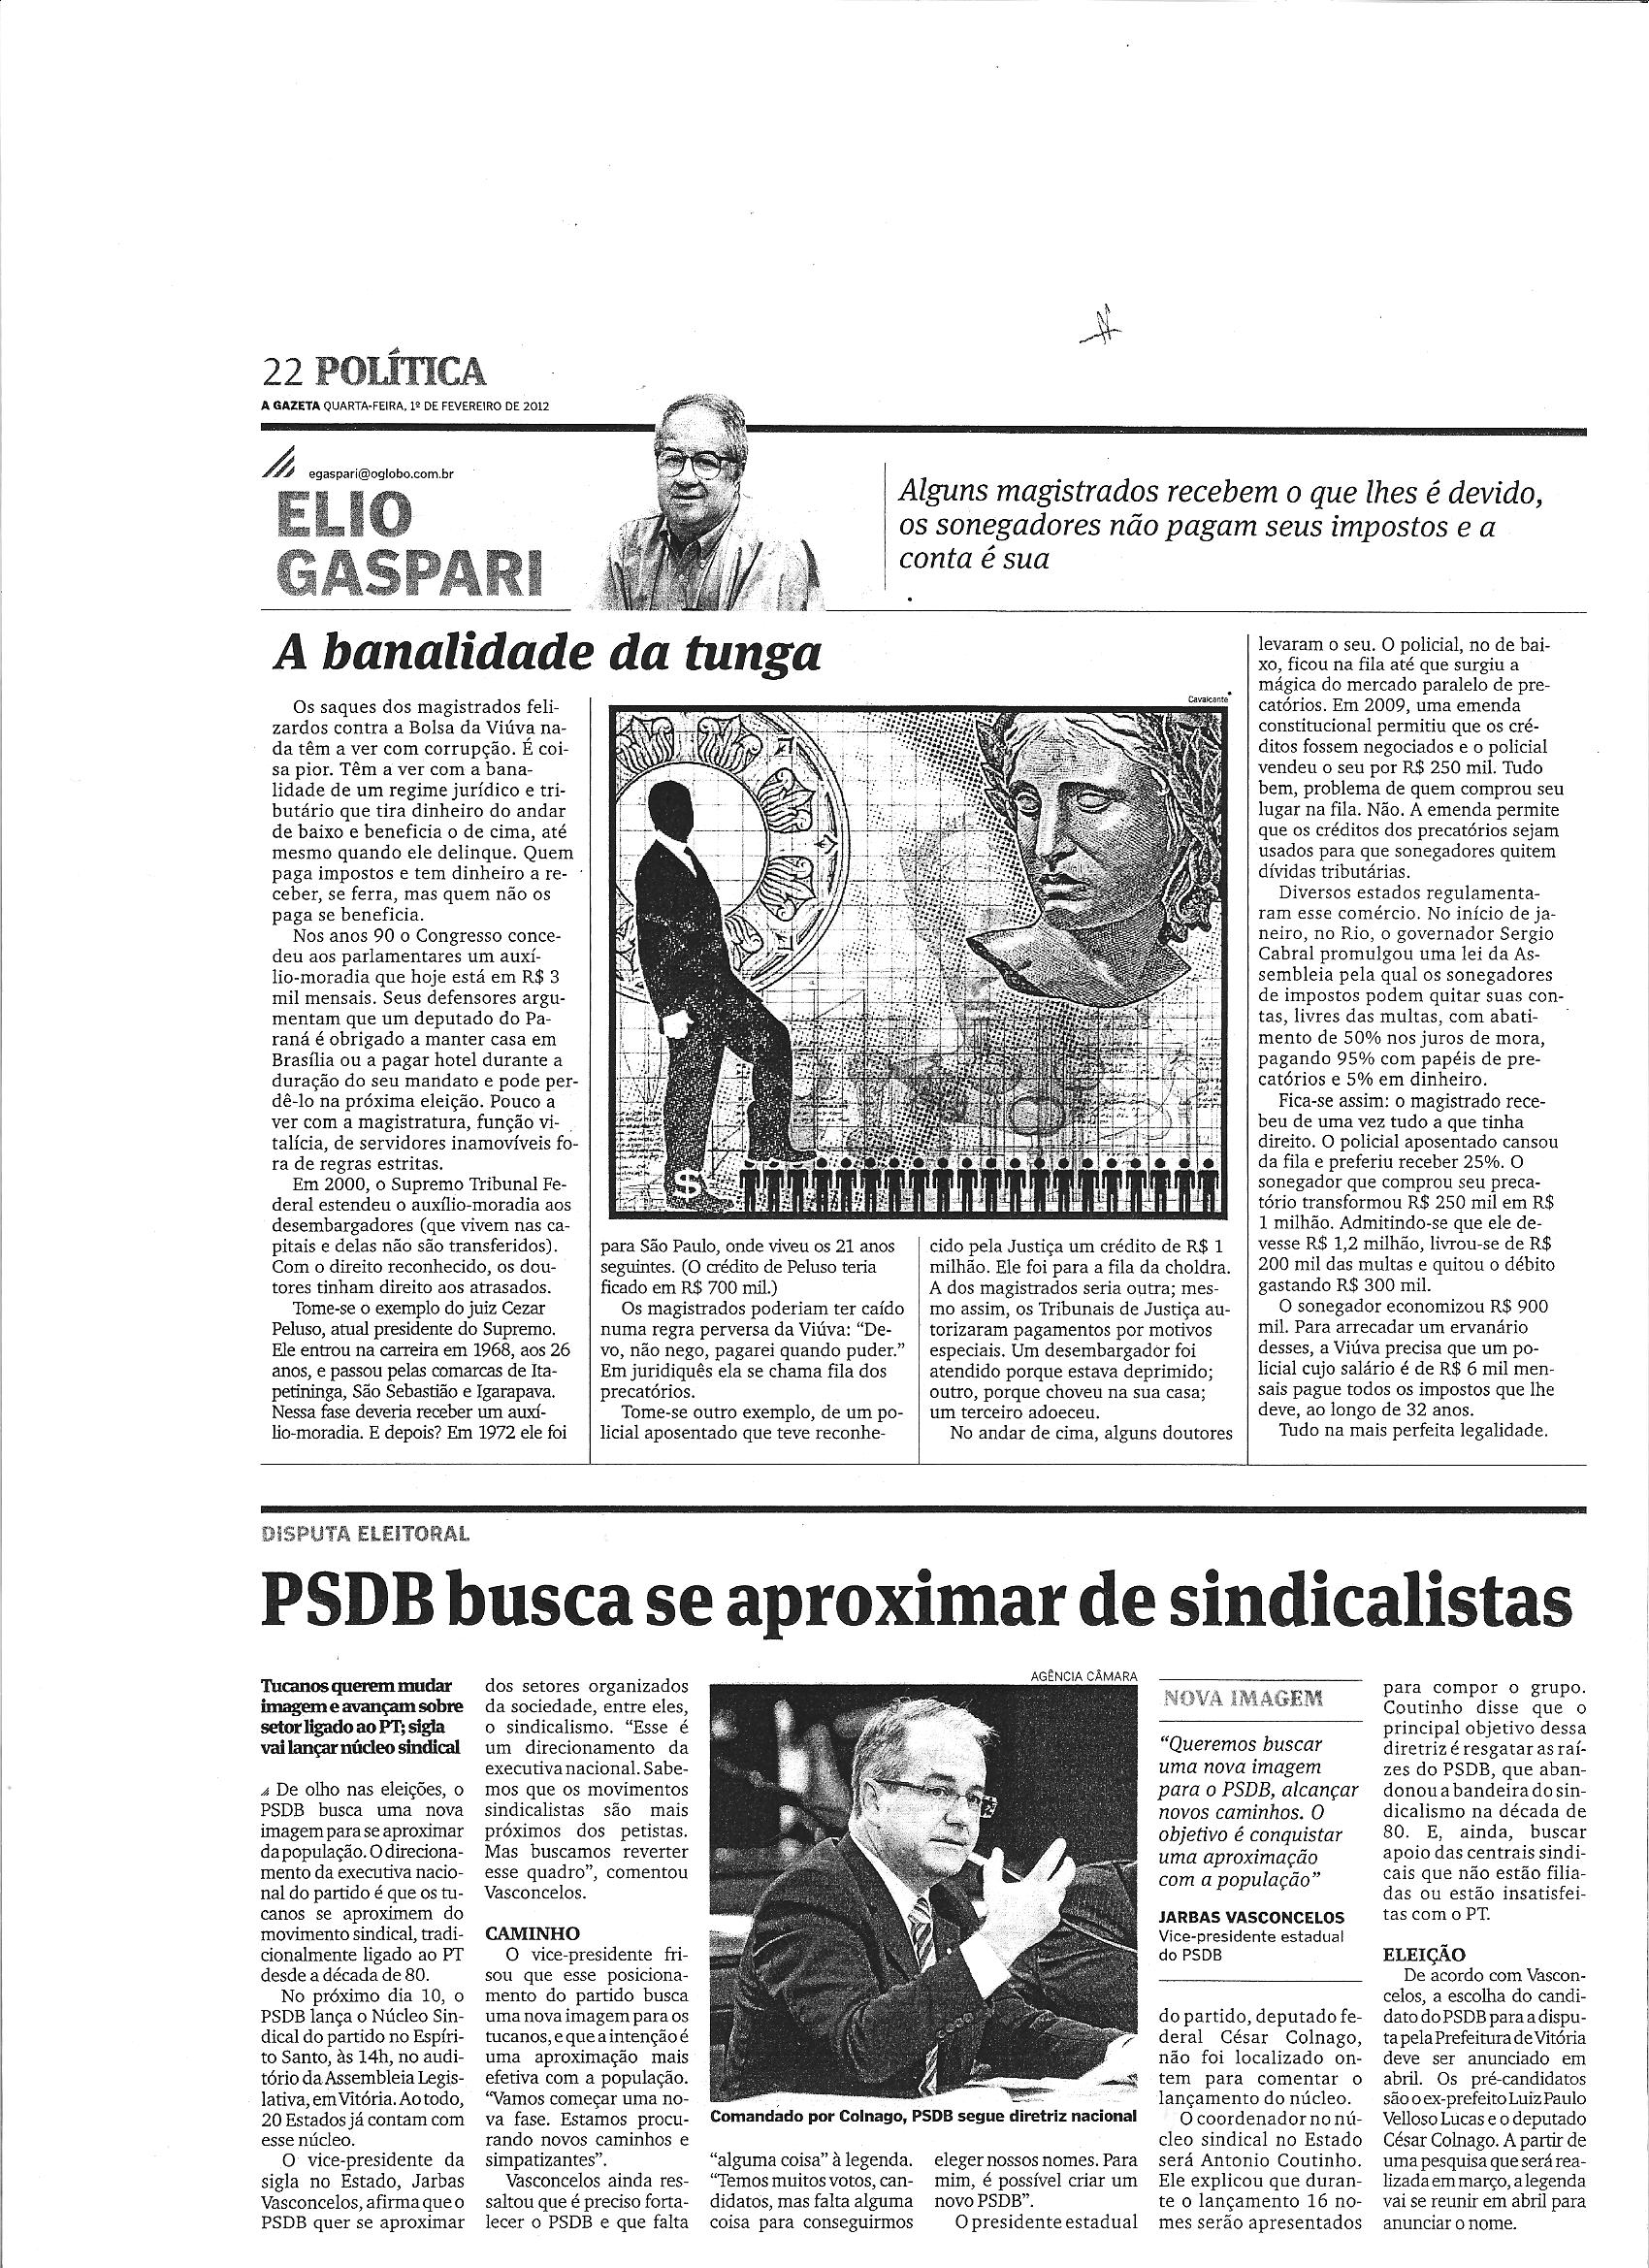 PSDB parte para o ataque e diz que Dilma mente